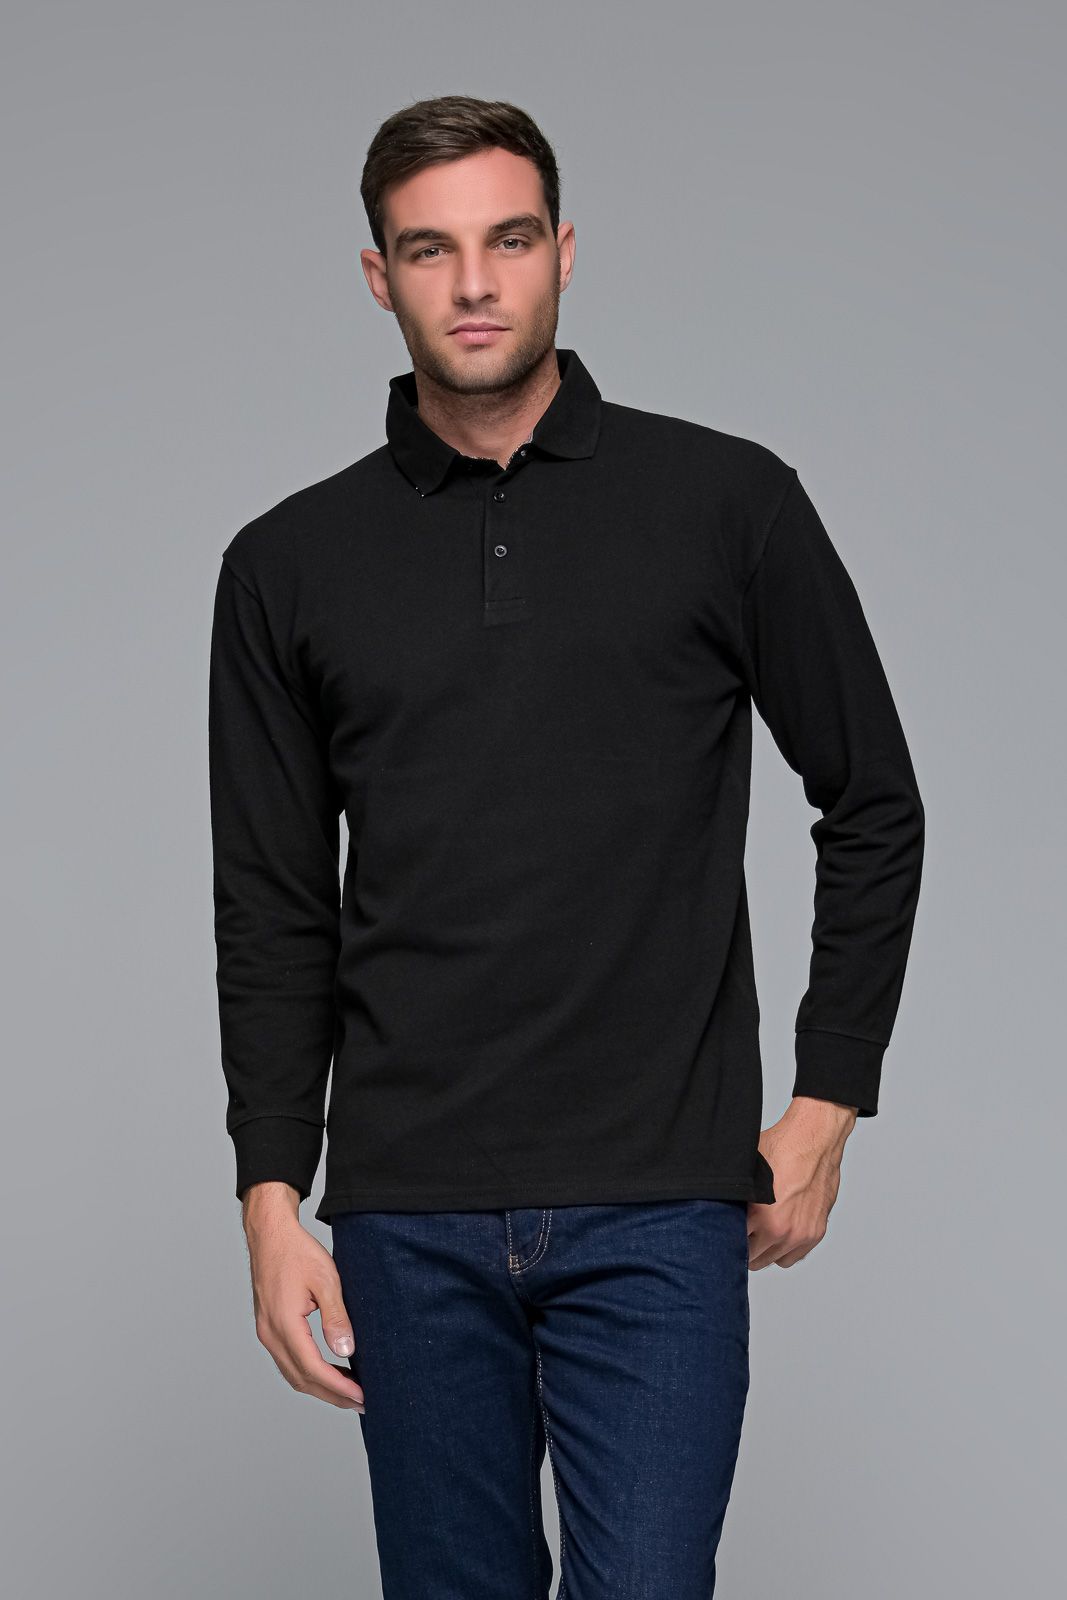 Μαύρο βαμβακερό ανδρικό πόλο μπλουζάκι μακρυμάνικο - Classic Fit